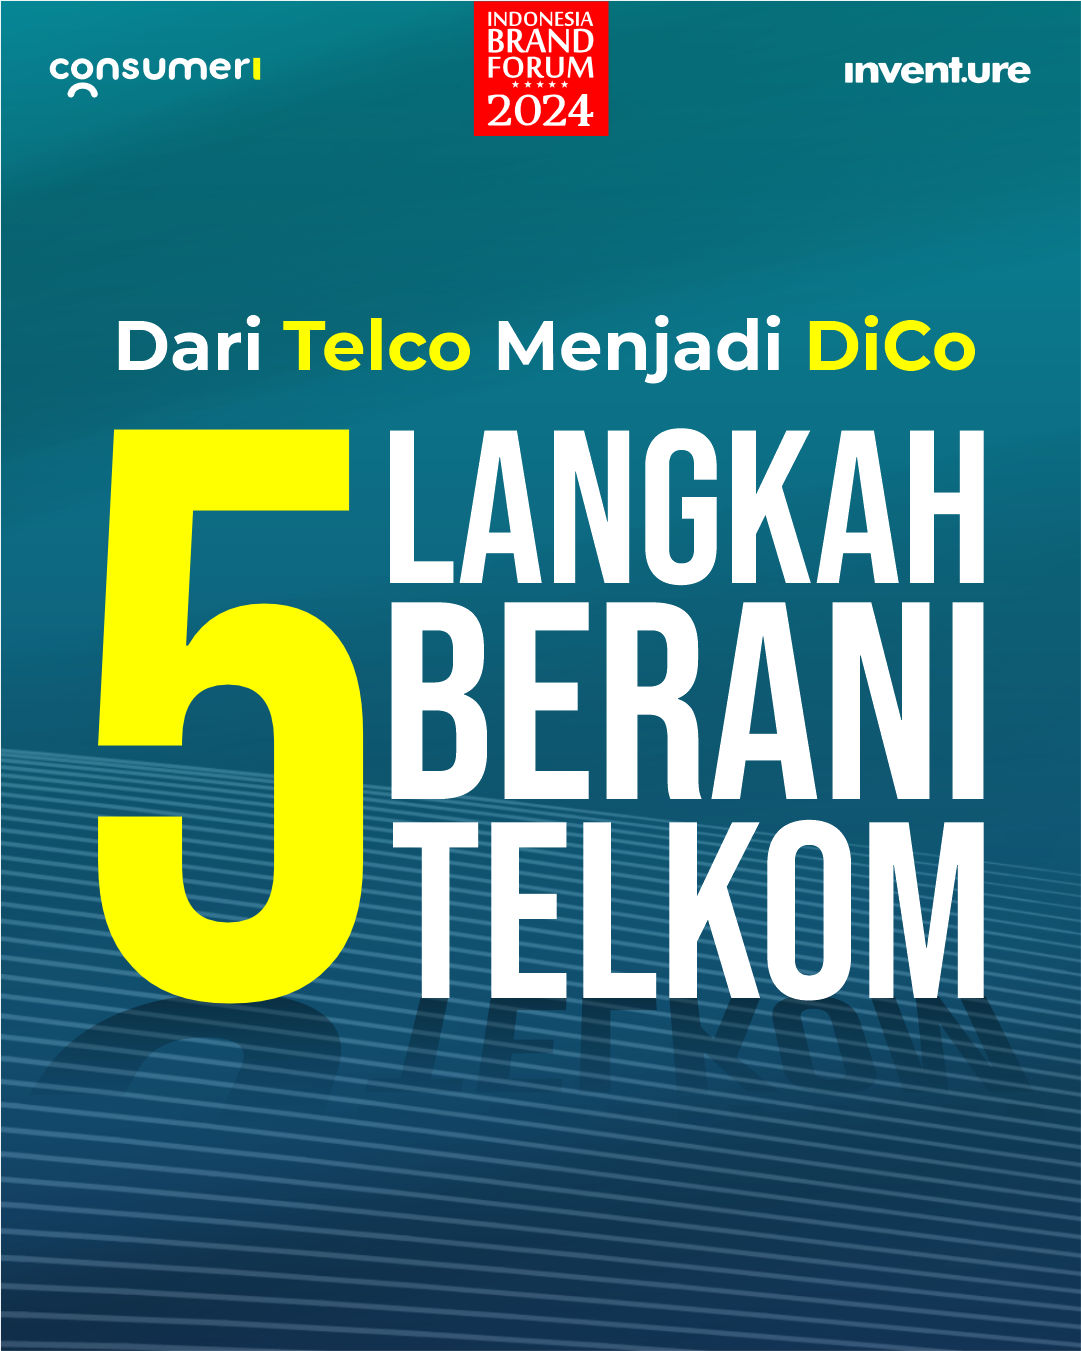 Dari Telco Menjadi DiCo: 5 Langkah Berani Telkom